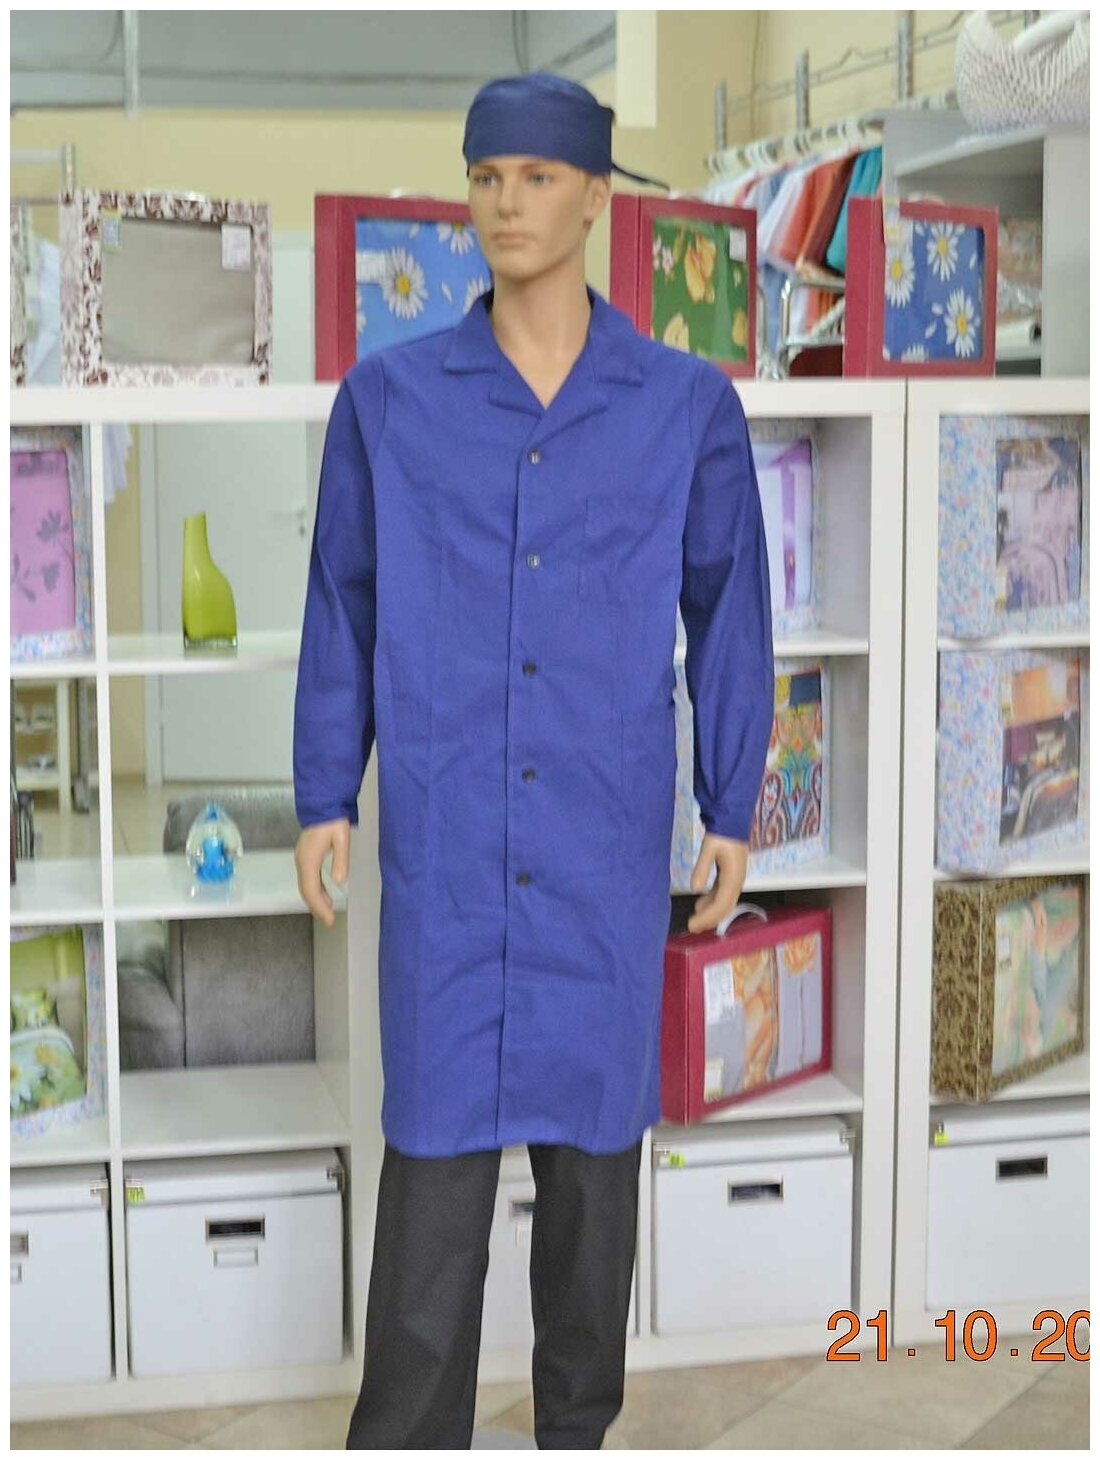 Халат для уроков труда и химии, производитель Фабрика швейных изделий №3, модель М-3, размер 40-42, цвет синий